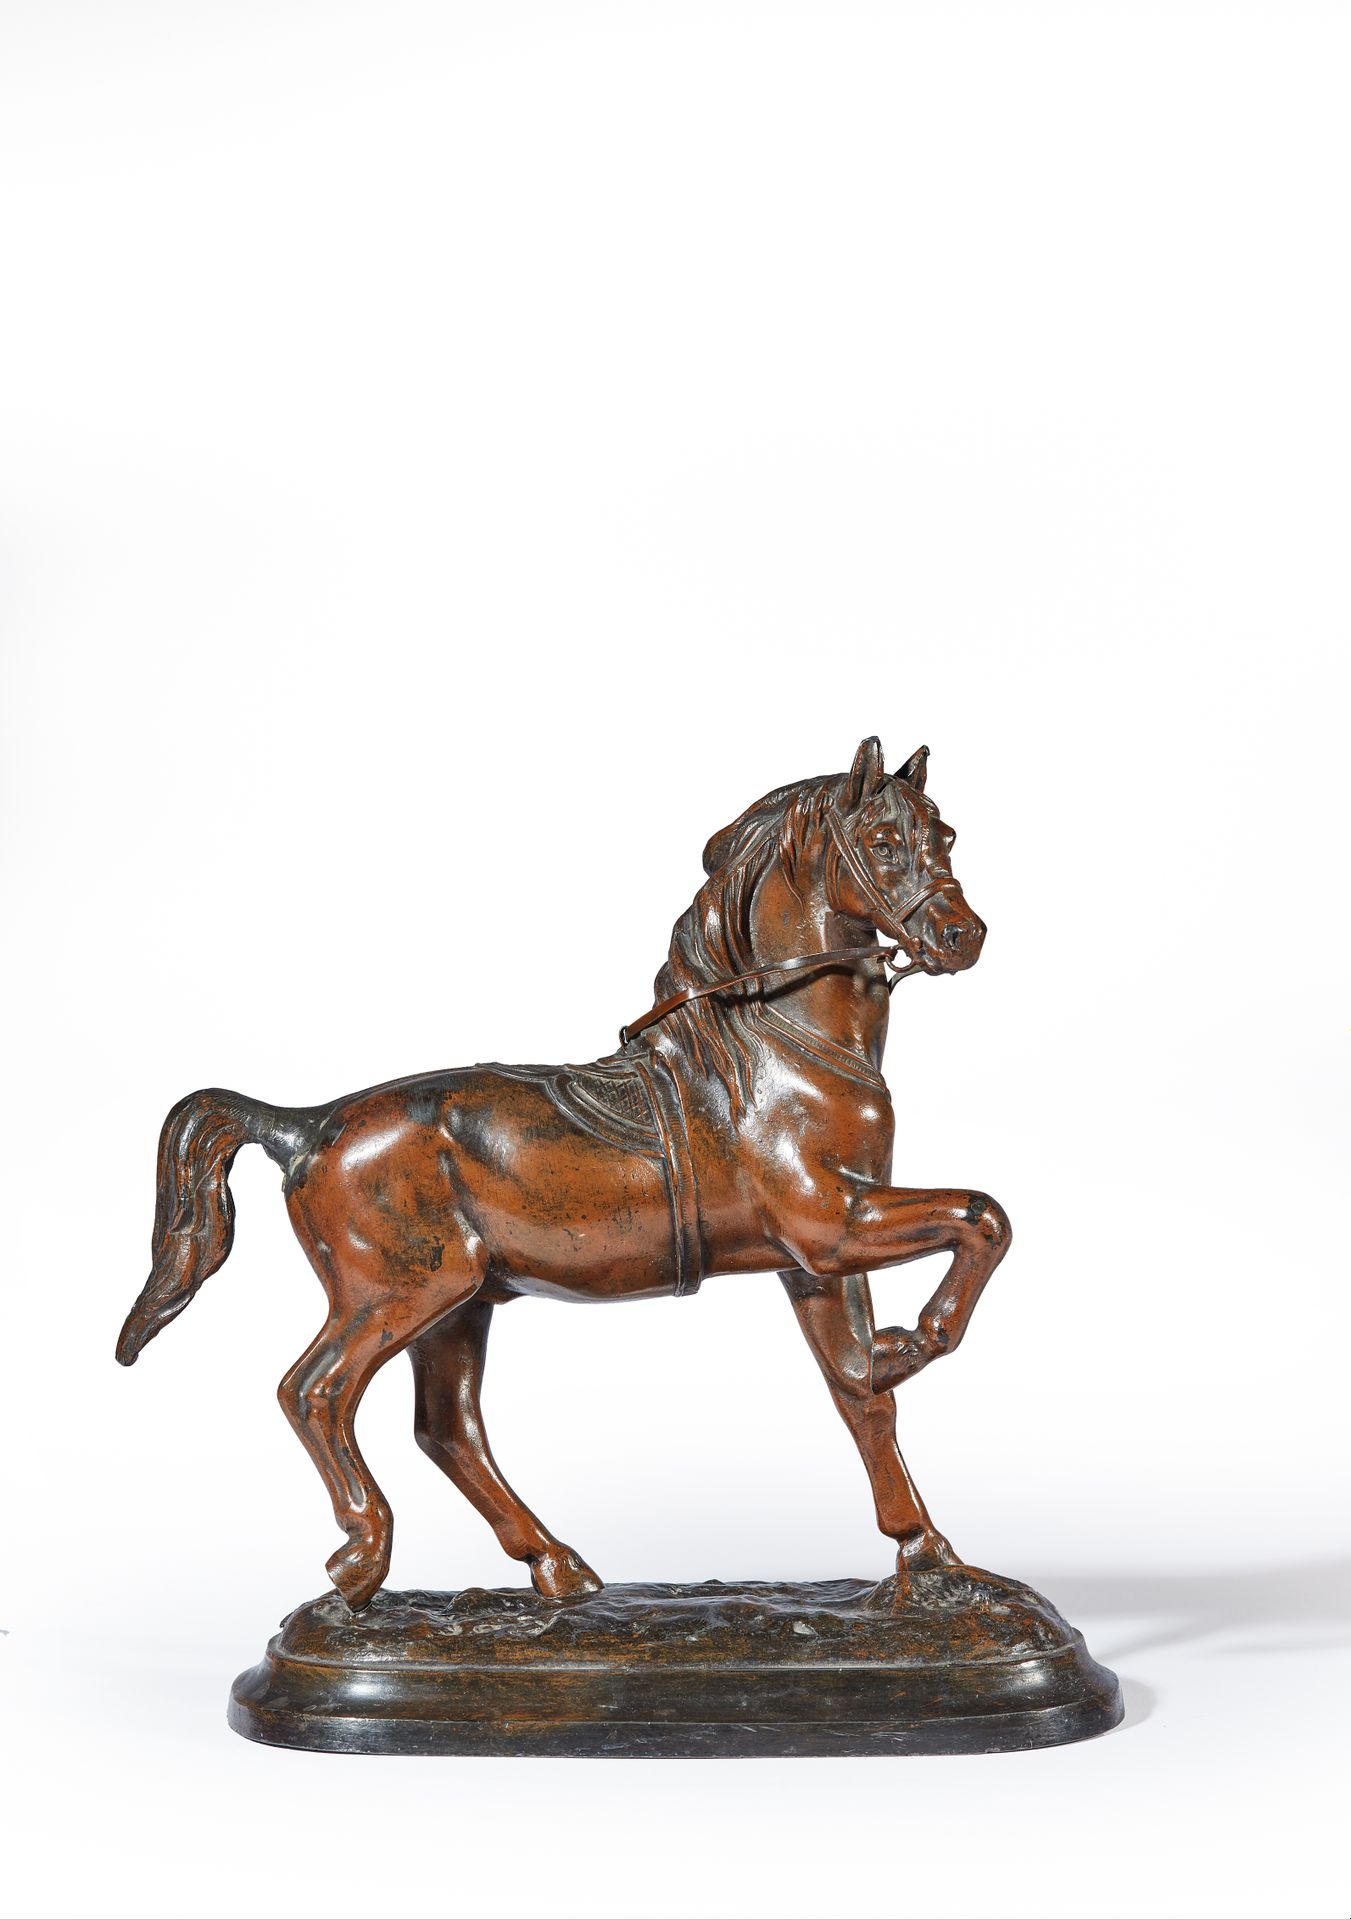 Null FADY (20. Jahrhundert)

Angeschirrtes Pferd

Patiniertes Metall mit Bronzei&hellip;